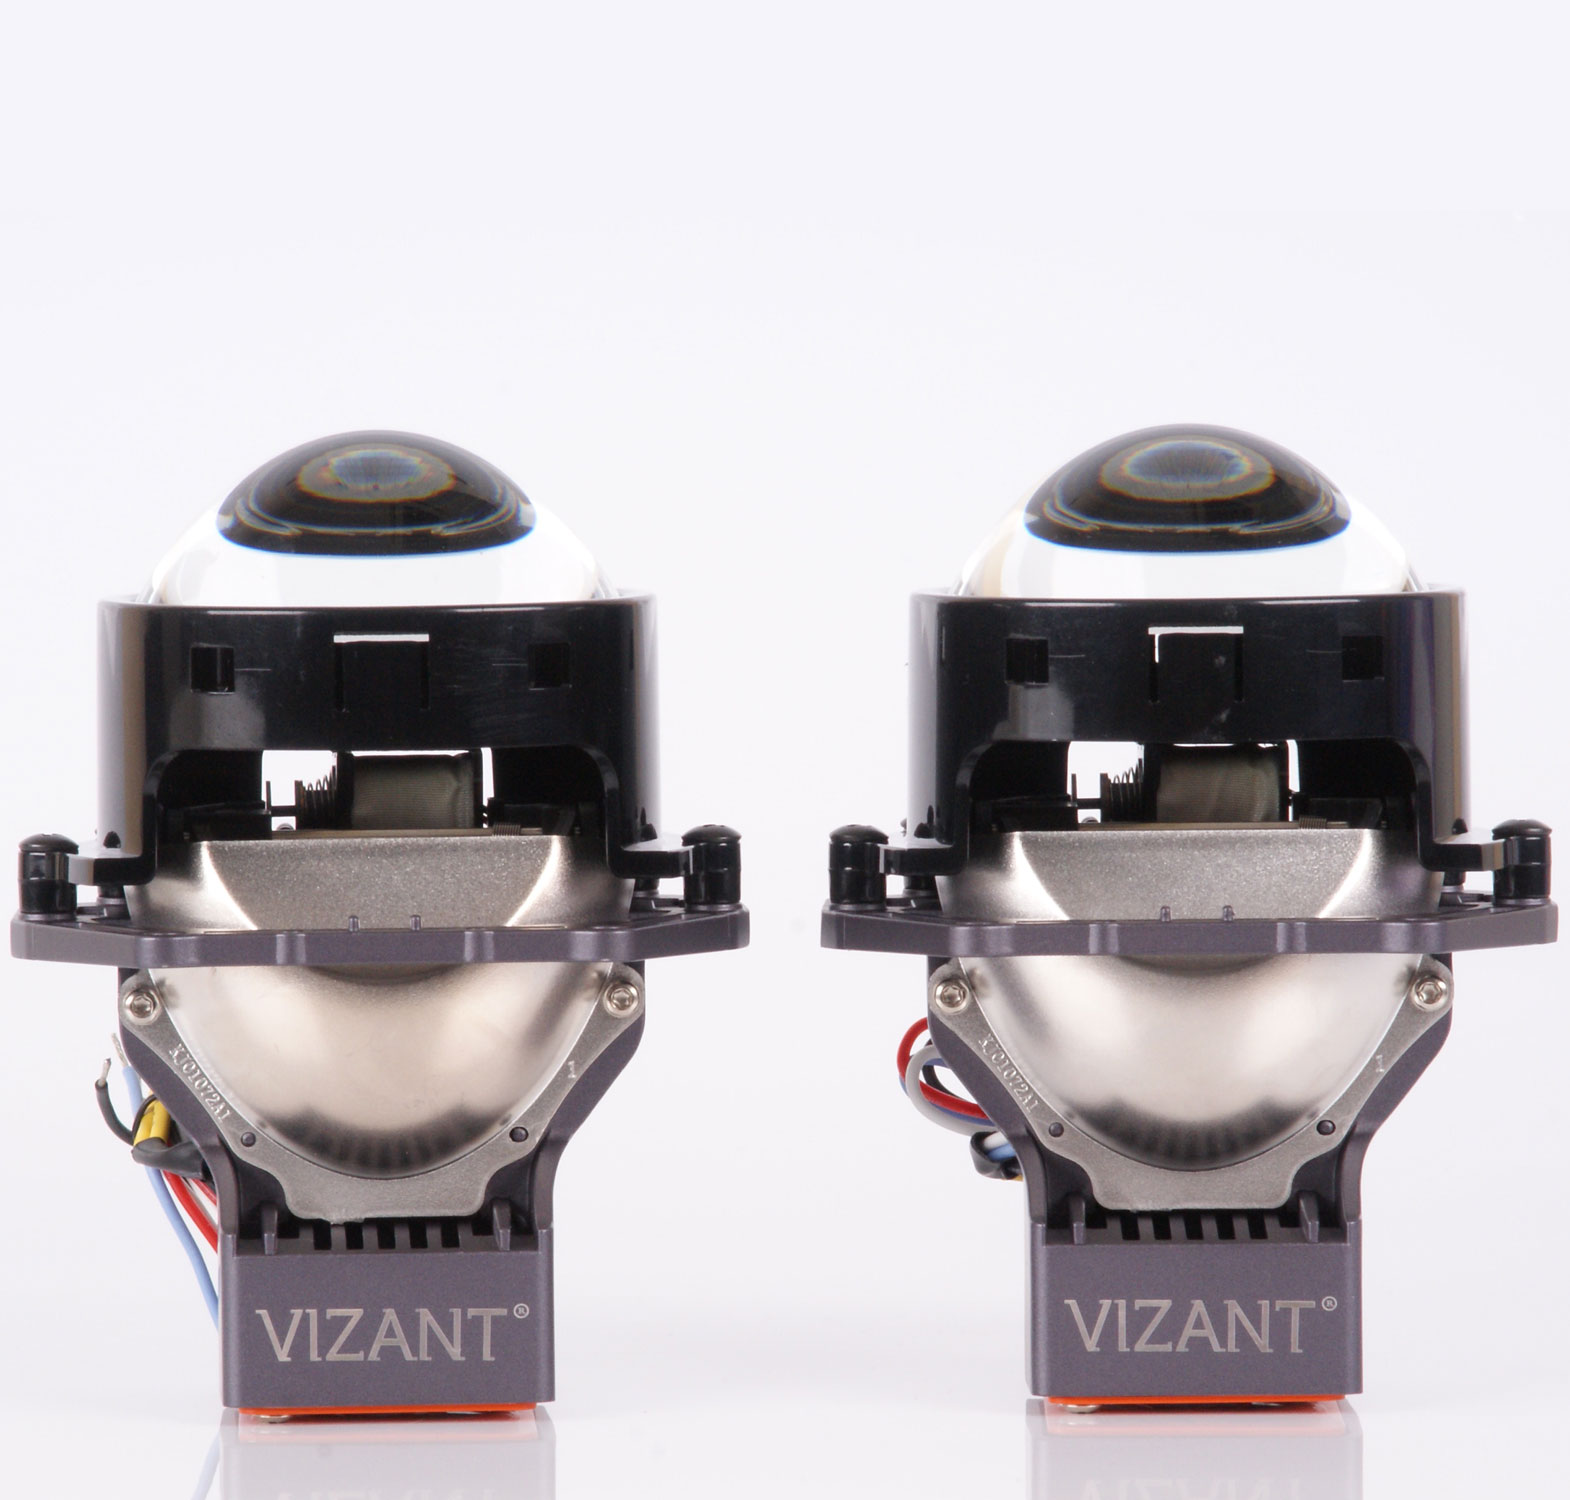 Лазерные би-модули линзы 3R Vizant TITANIUM LAZER с лазерным и светодиодным  источником света